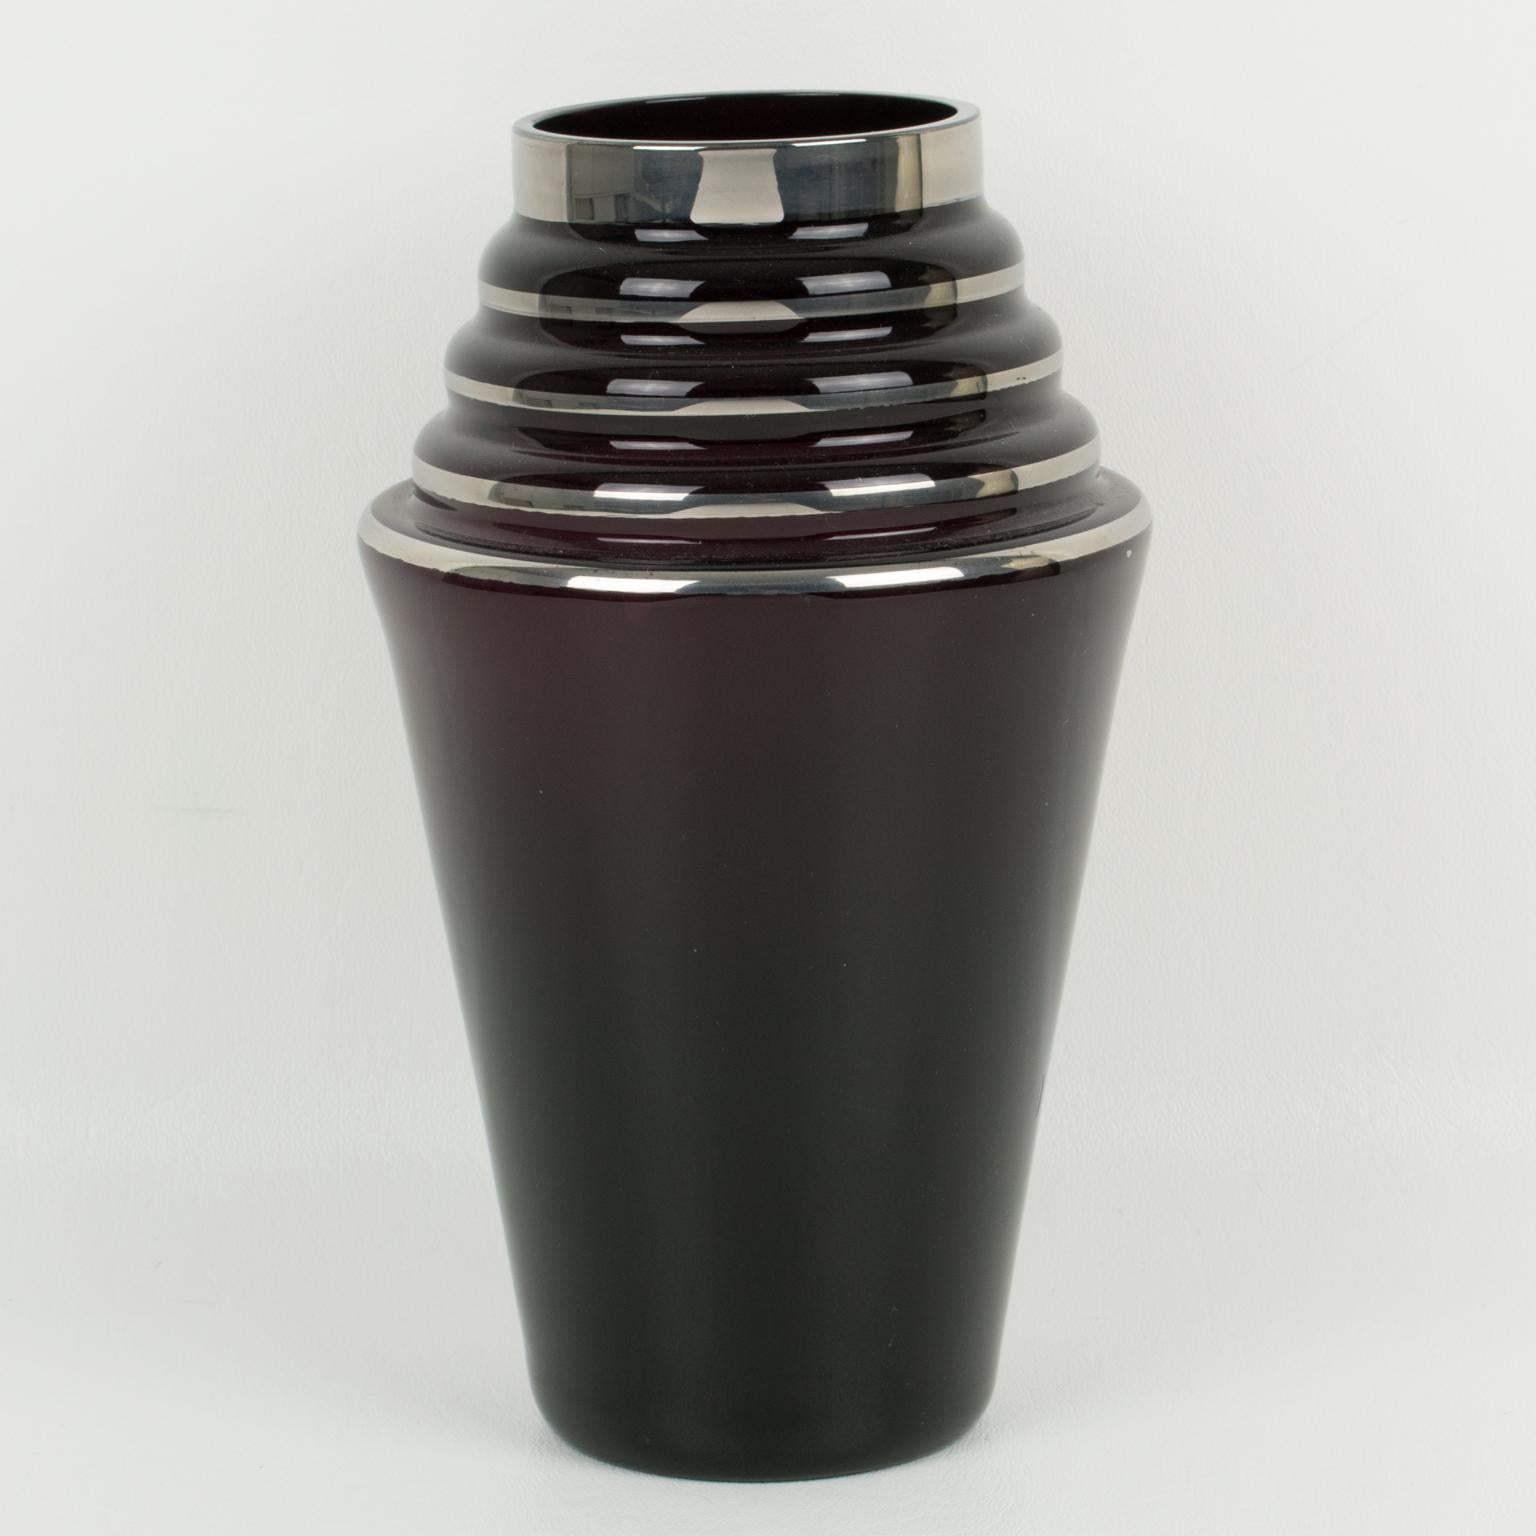 Diese hübsche schwarze Glasvase aus den 1930er Jahren im französischen Art déco-Stil ist rundherum mit einer silbernen Dekoration mit geometrischen Mustern versehen. Bitte beachten Sie, dass die genaue Farbe des Glasmaterials dieser typischen